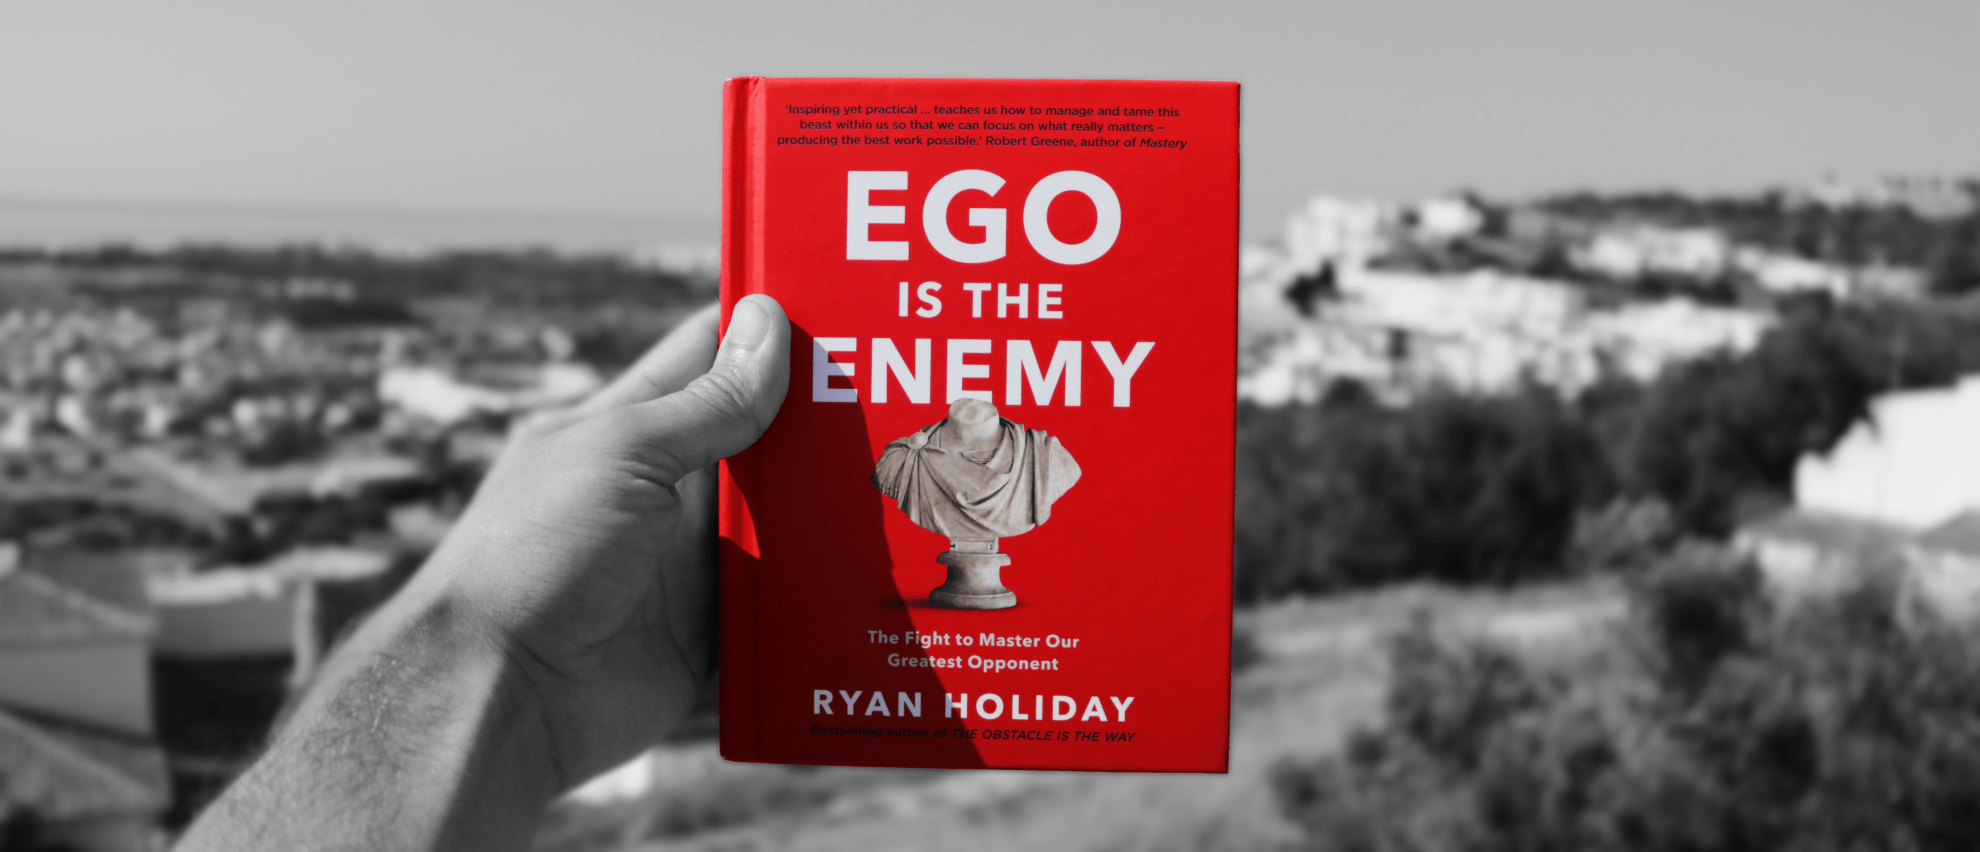 ego is the enemy recap